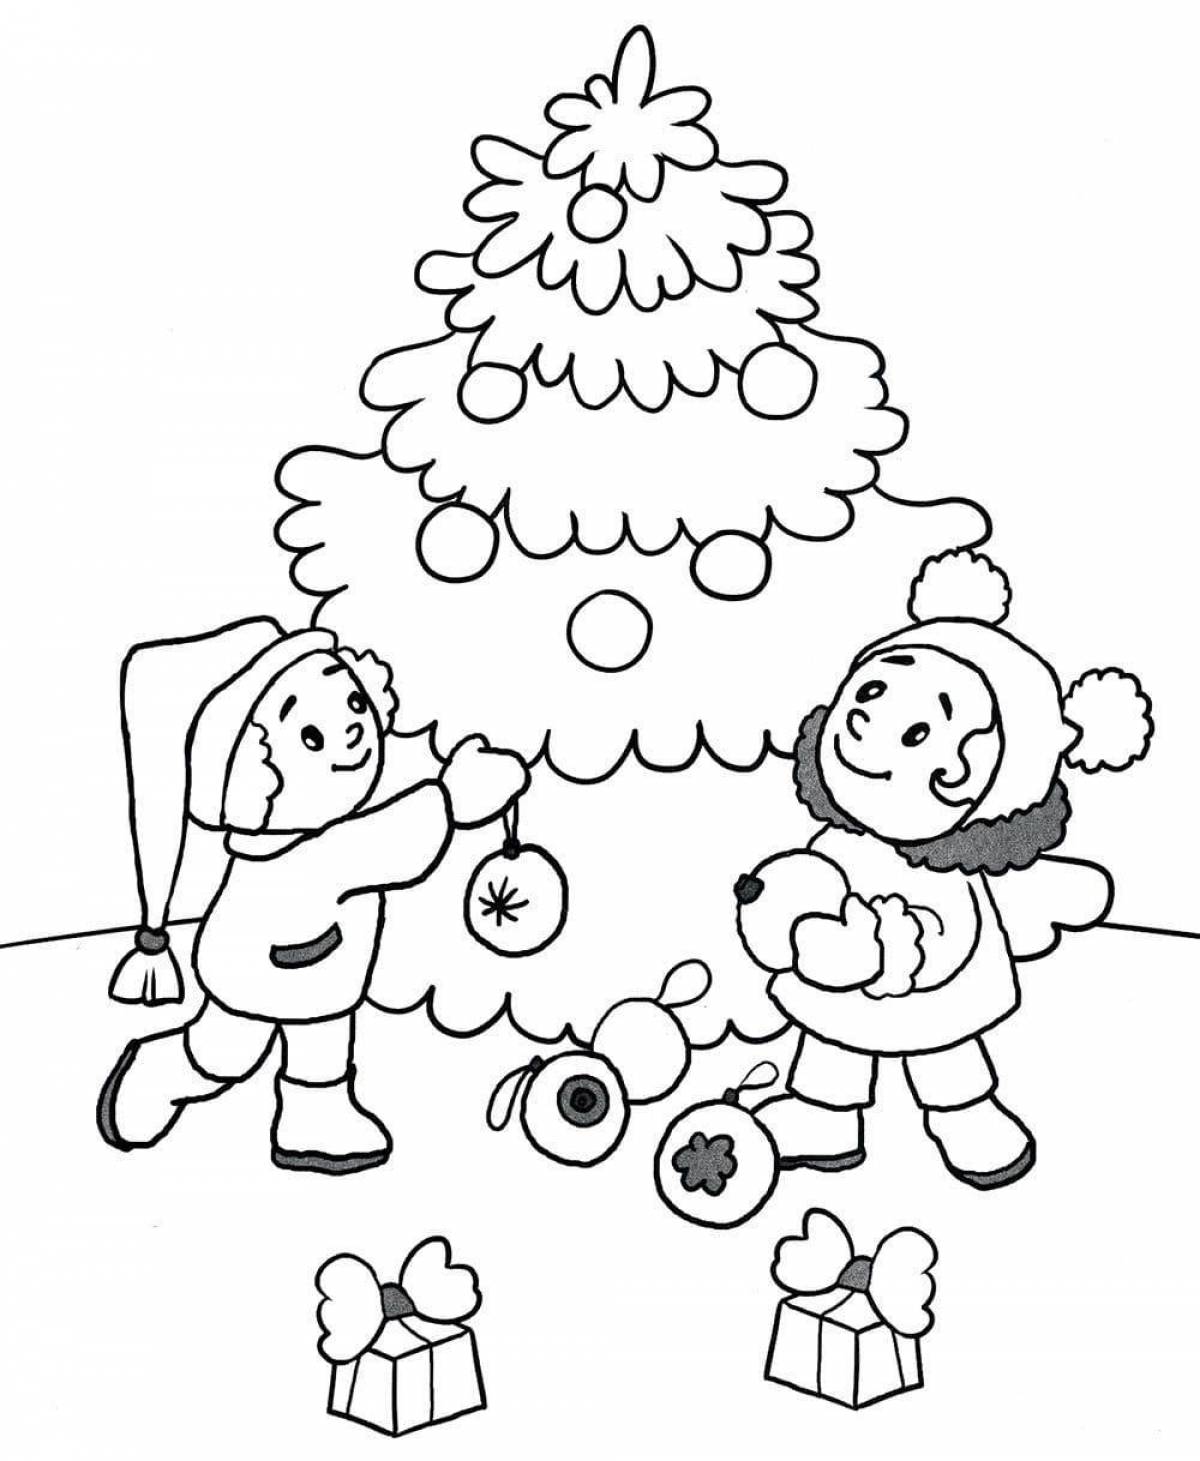 Fun coloring book for kids winter fun 5-6 years old